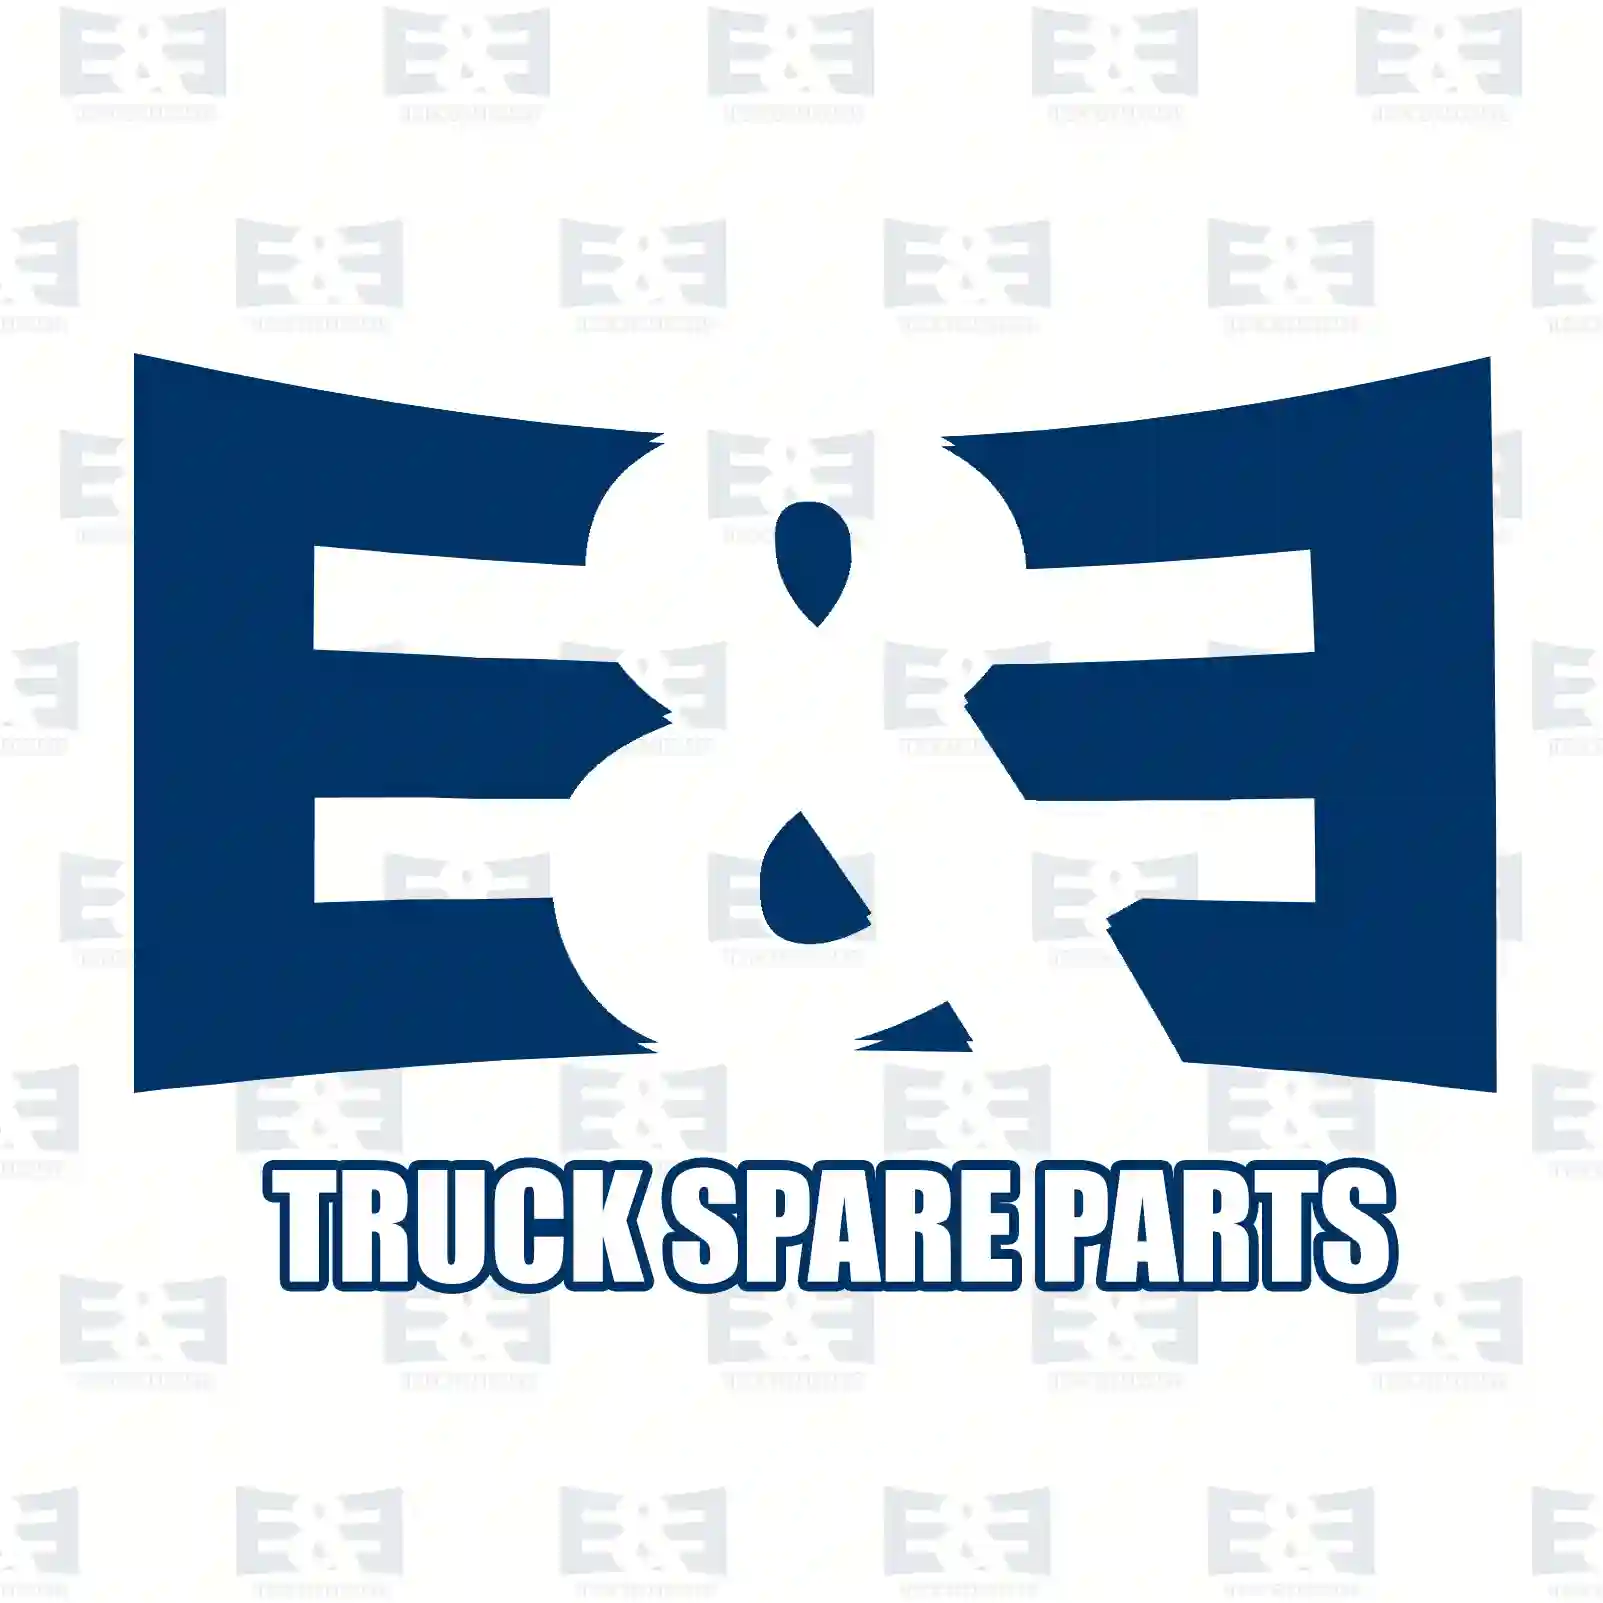 Washer, 2E2284039, 81907110640, 3463360062, 3553540362 ||  2E2284039 E&E Truck Spare Parts | Truck Spare Parts, Auotomotive Spare Parts Washer, 2E2284039, 81907110640, 3463360062, 3553540362 ||  2E2284039 E&E Truck Spare Parts | Truck Spare Parts, Auotomotive Spare Parts